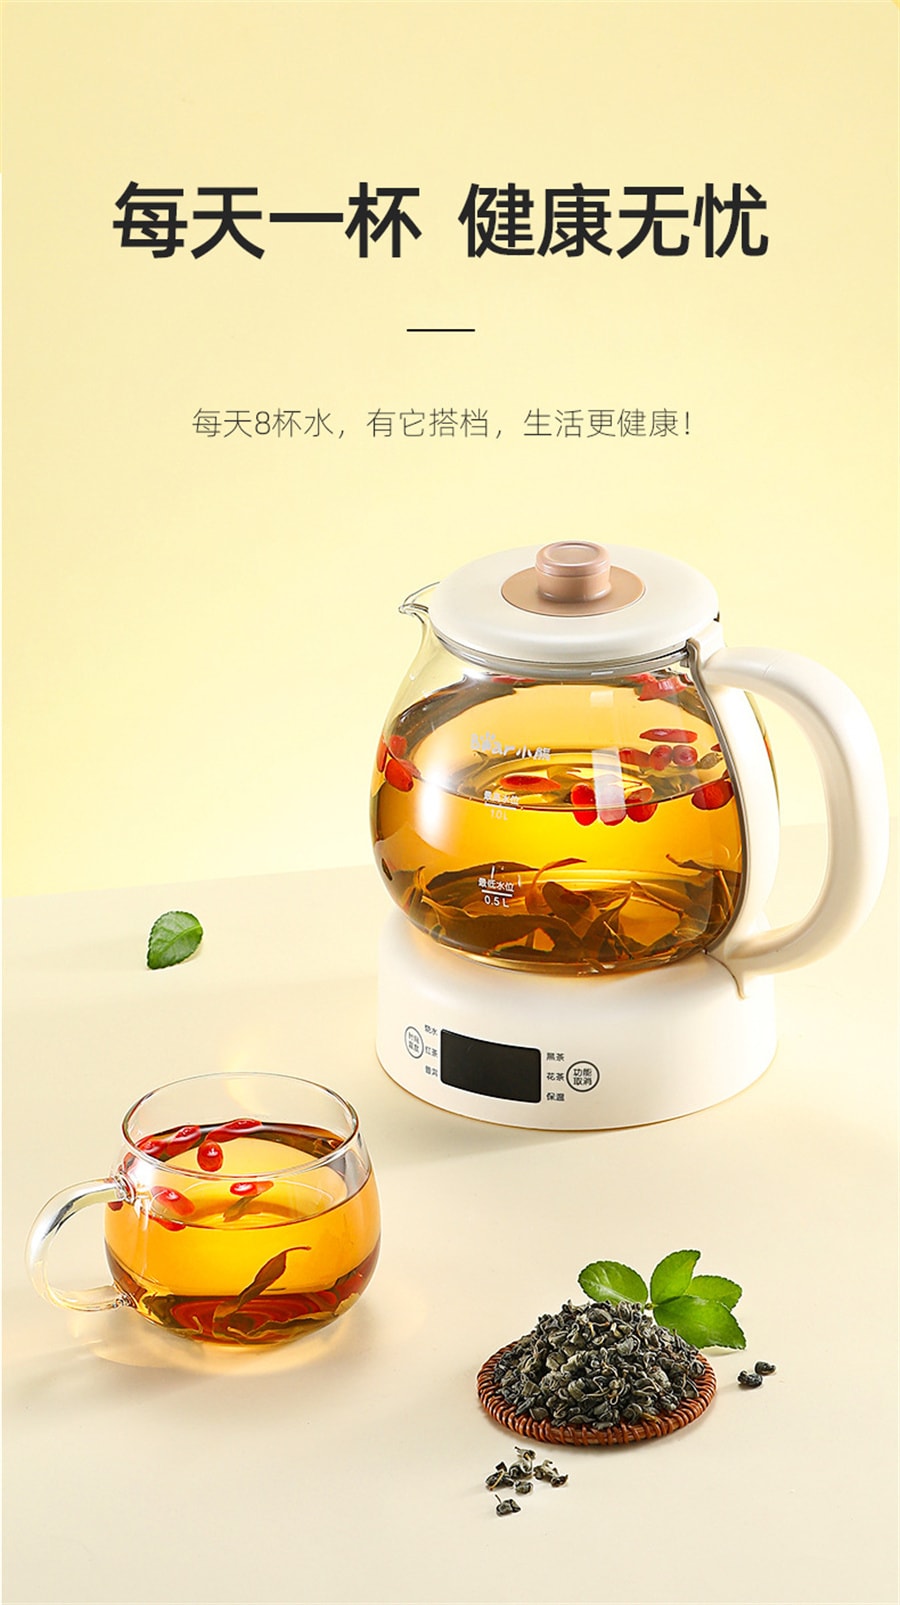 【中国直邮】杞里香 罗布麻茶 降血压 降血脂 改善睡眠质量 125g瓶